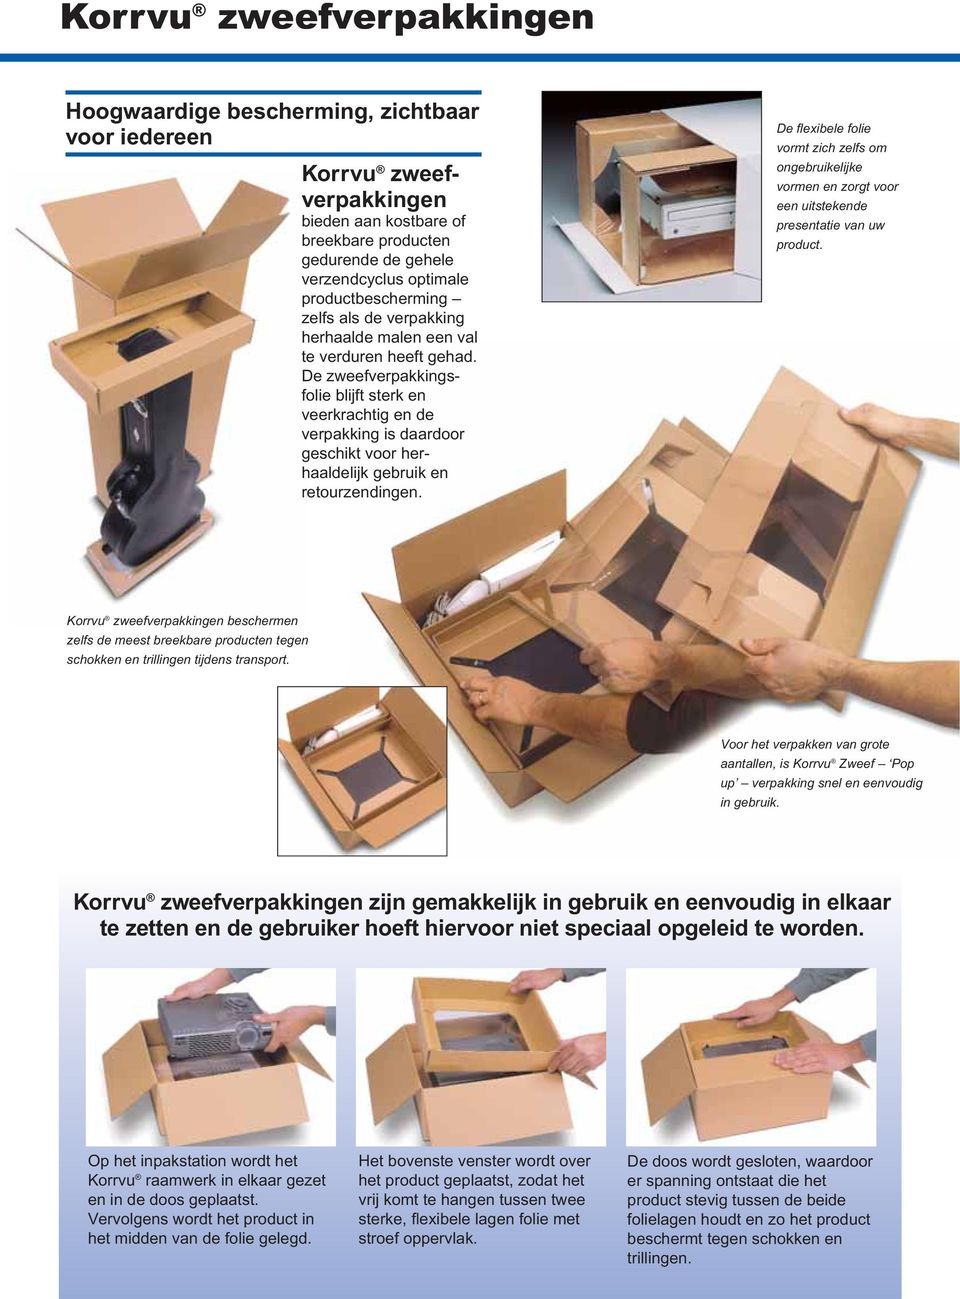 De zweefverpakkingsfolie blijft sterk en veerkrachtig en de verpakking is daardoor geschikt voor herhaaldelijk gebruik en retourzendingen.